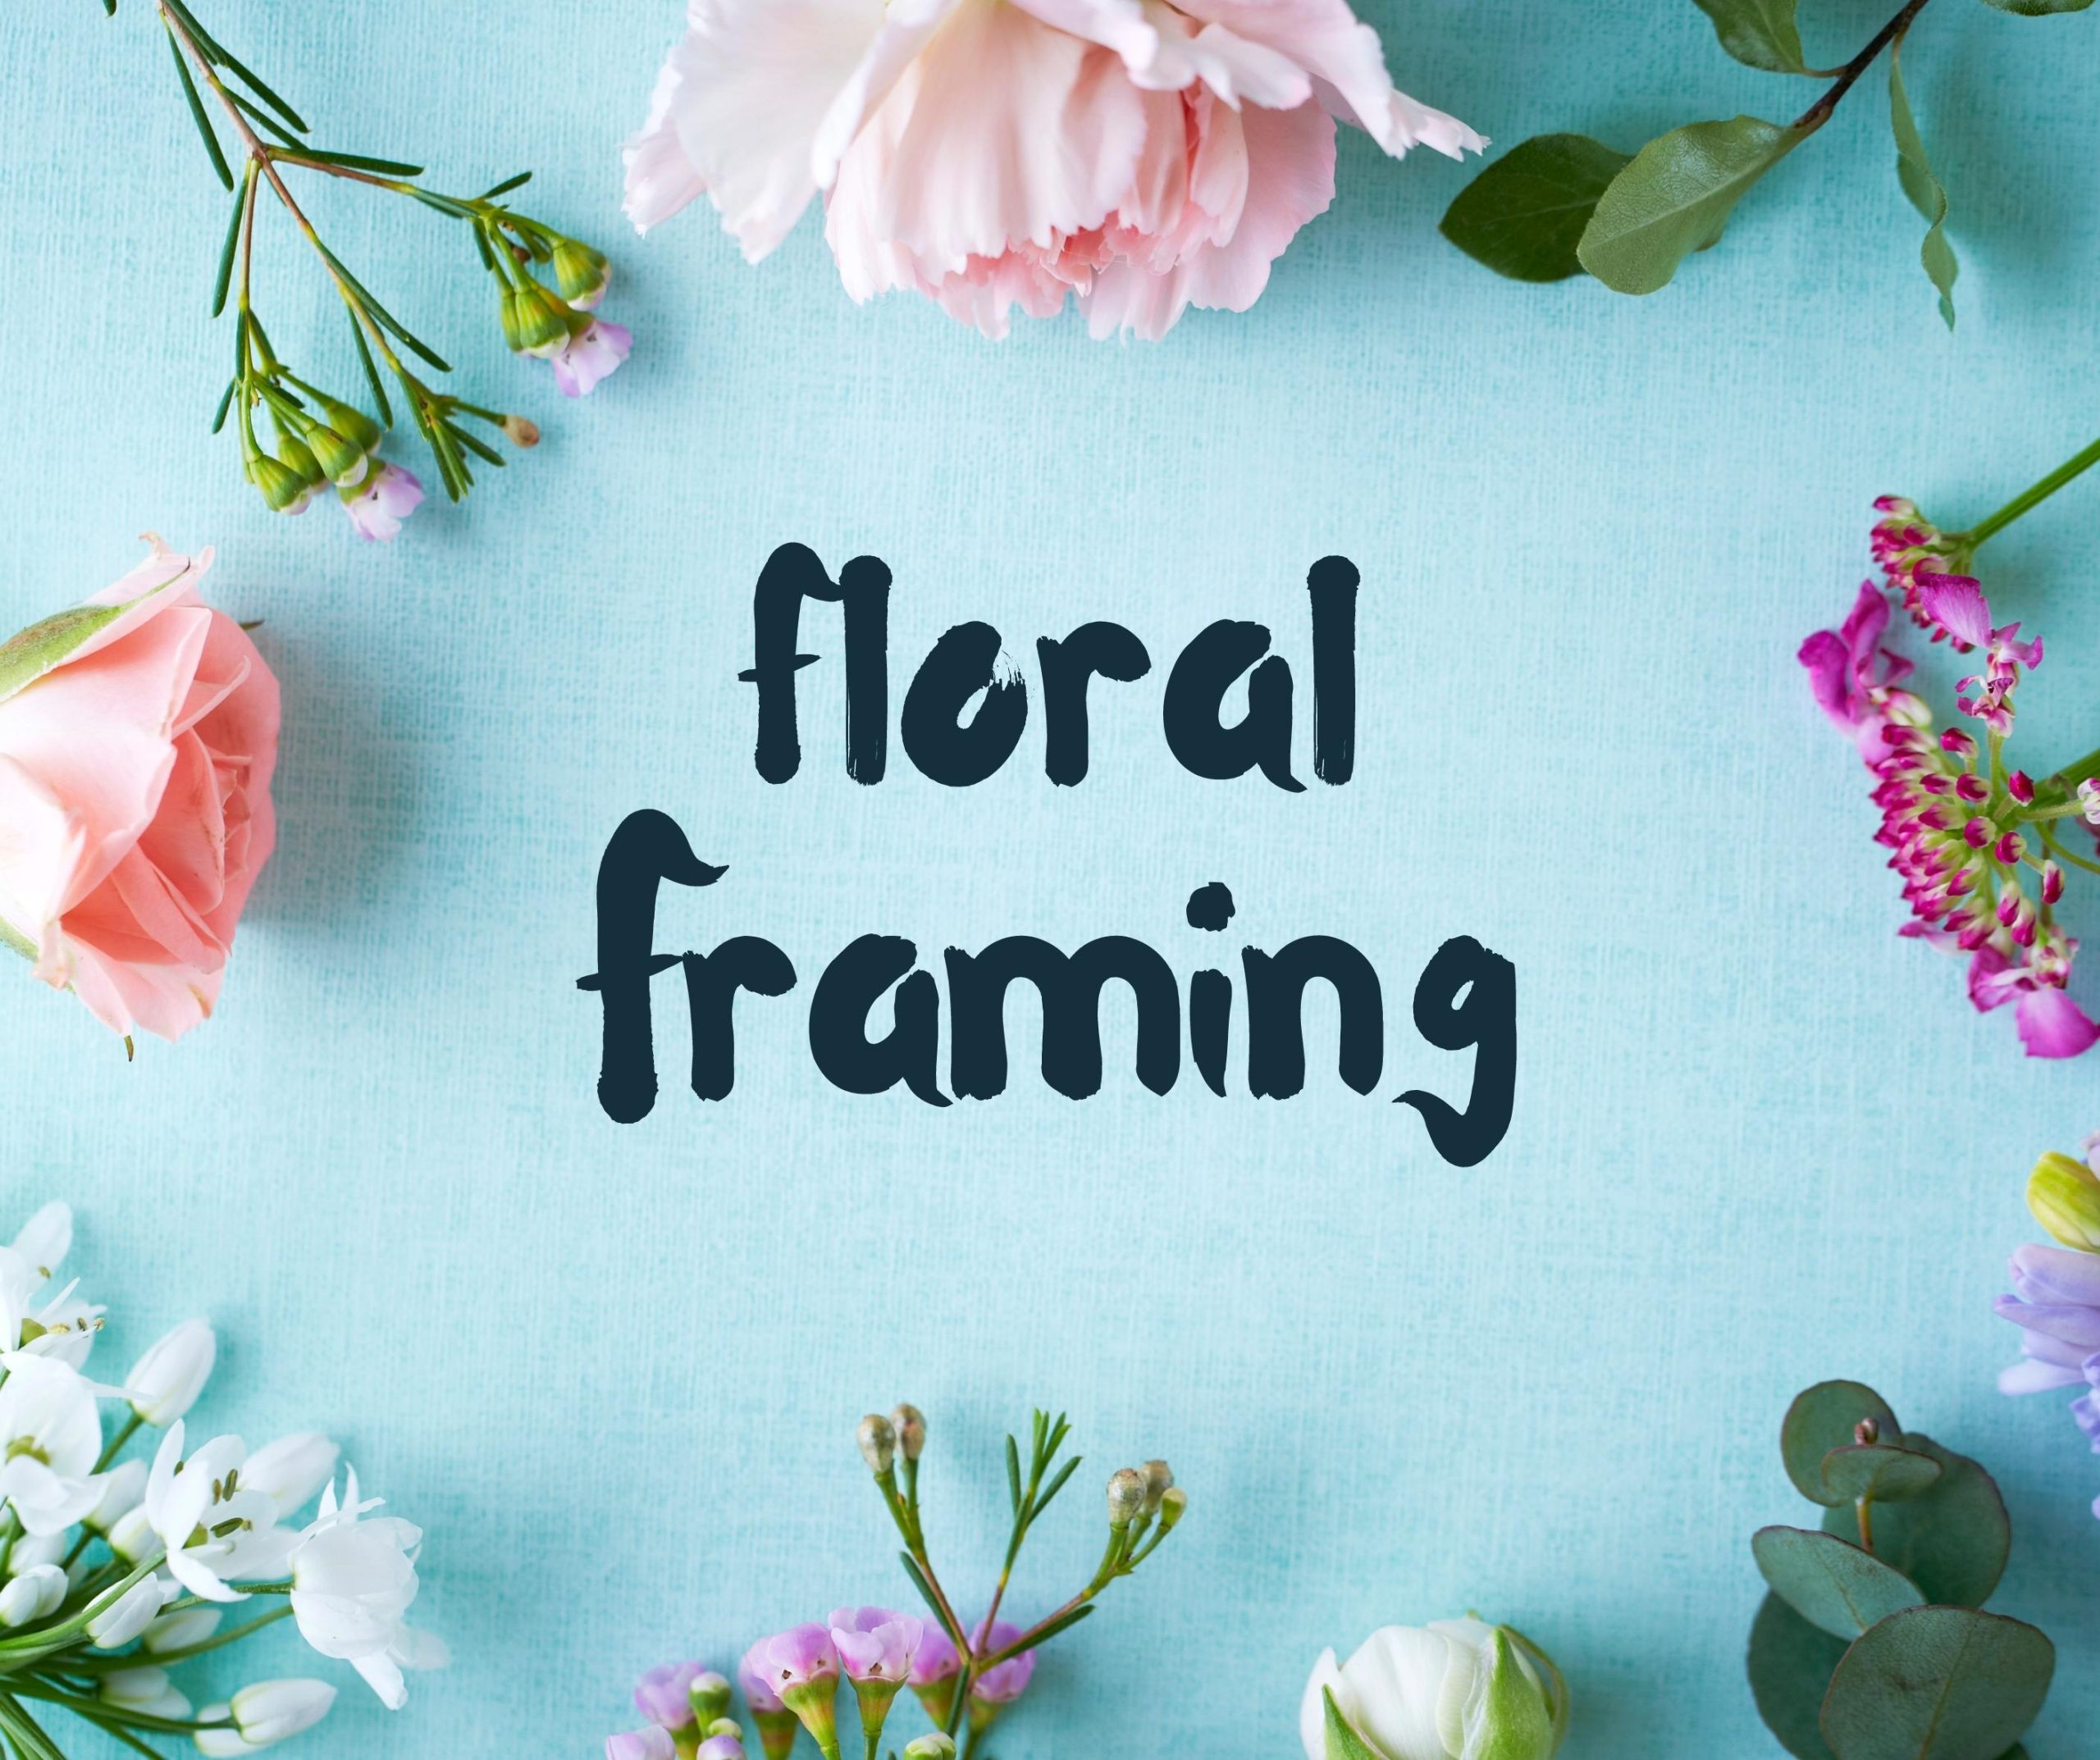 Floral - Framing